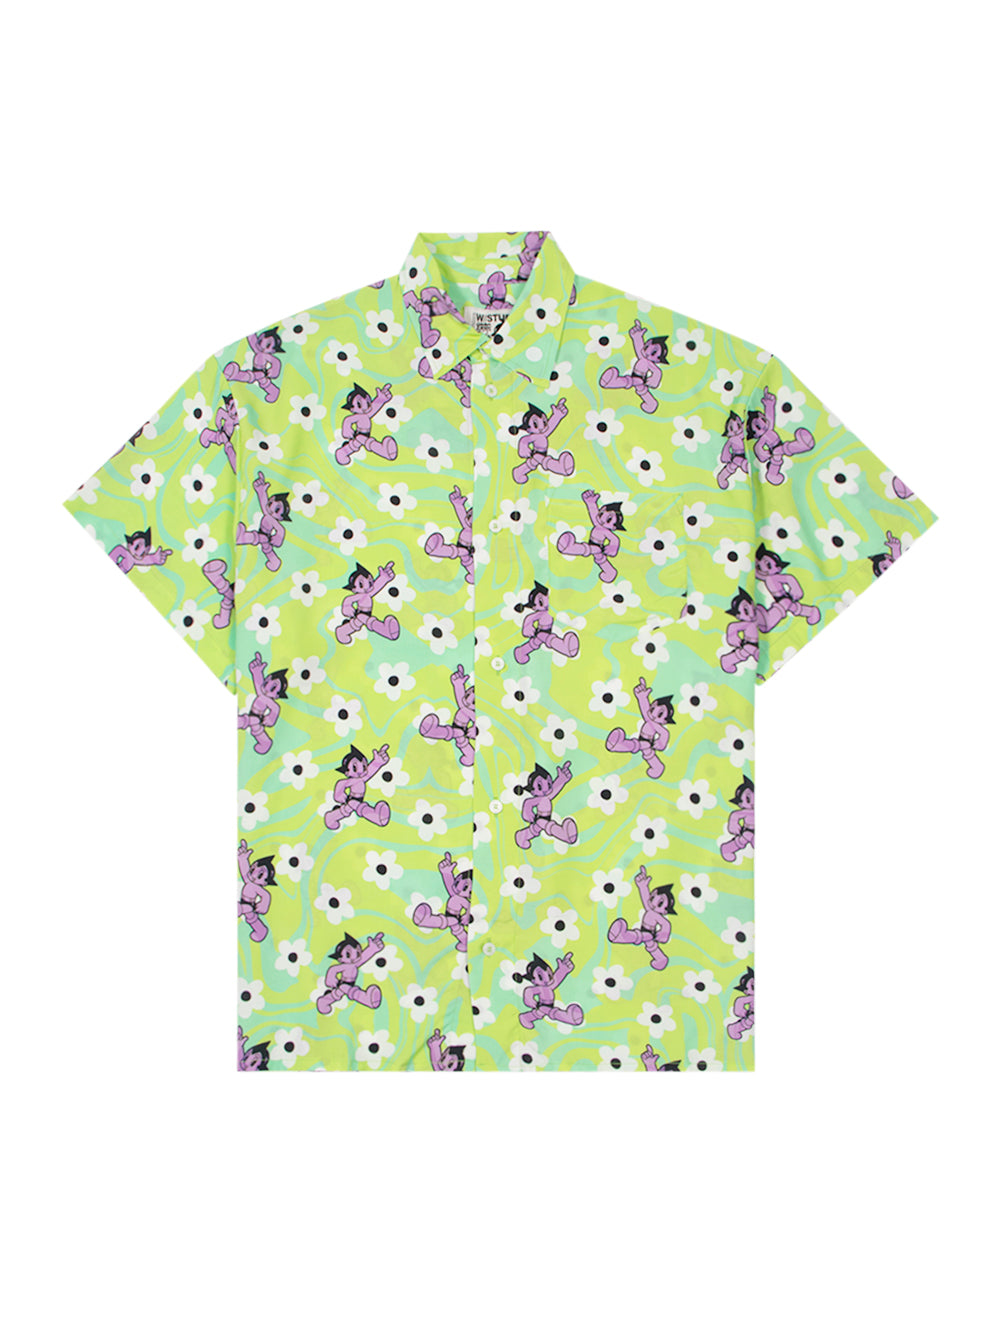 Flower Astro Boy (Green Flower)